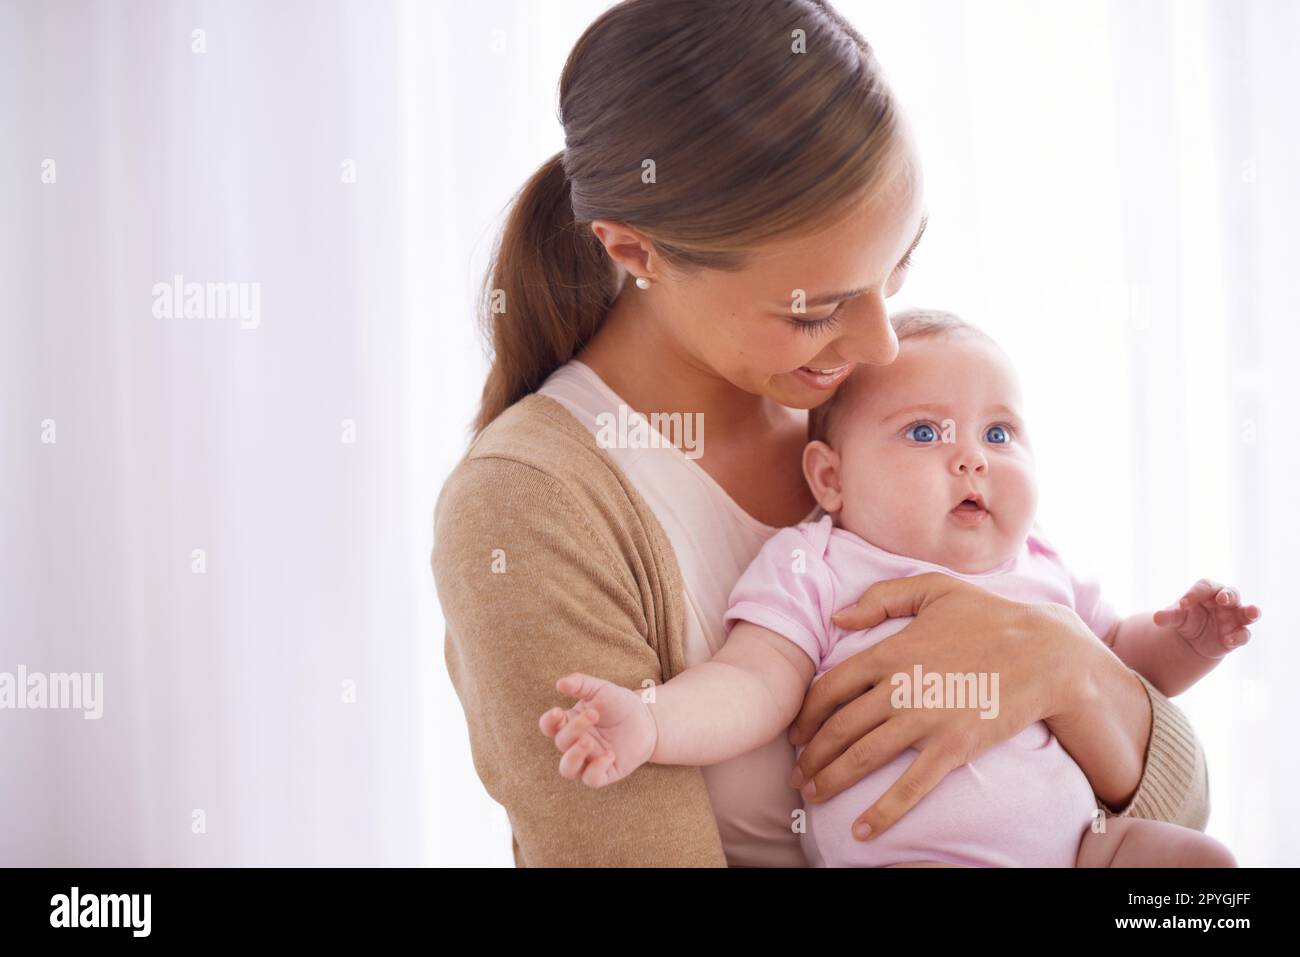 Sie ist so ein Freudenbündel. Eine junge Mutter, die sich mit ihrem kleinen Mädchen anfreundet. Stockfoto